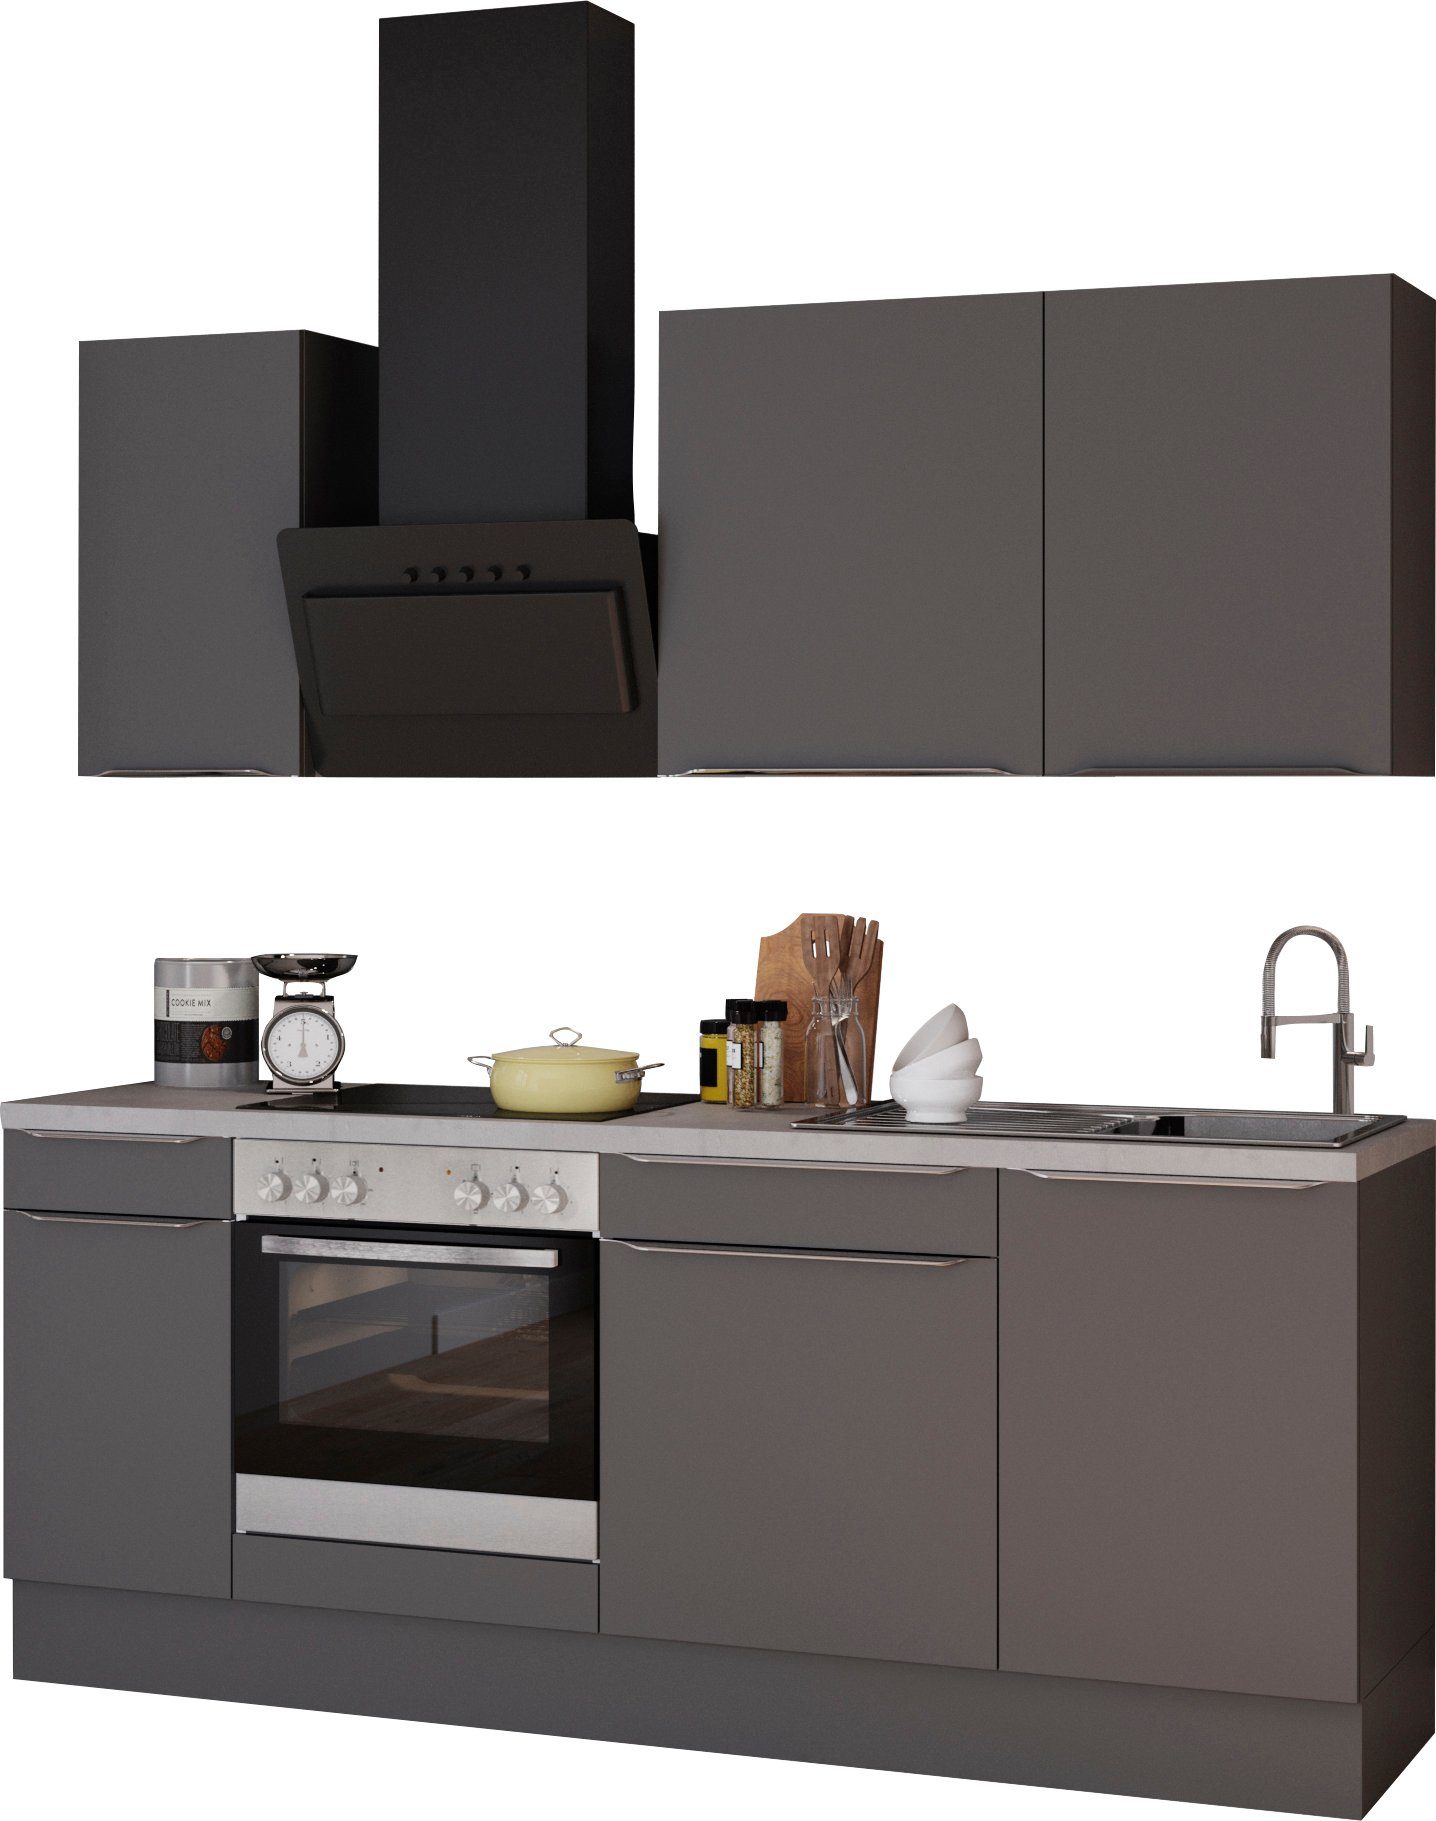 OPTIFIT Küchenzeile Aken, mit E-Geräten, Breite 210 cm grau